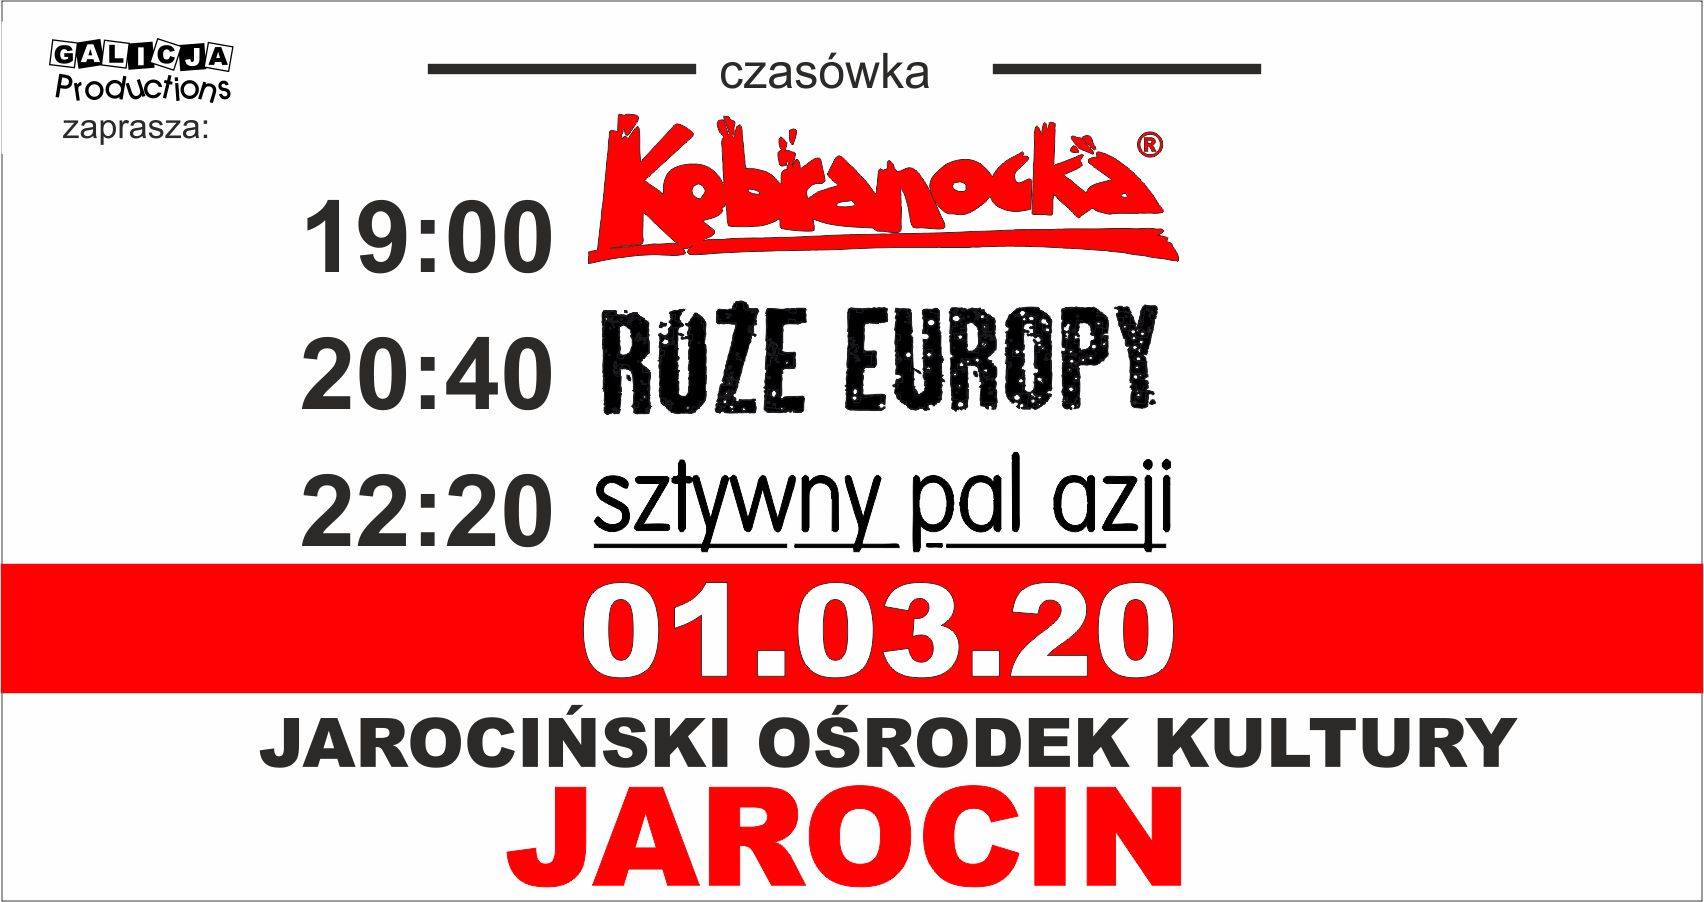 Kobranocka, Sztywny Pal Azji, Róże Europy pojutrze 1 marca 2020 r. w JOK Jarocin. Polecamy!